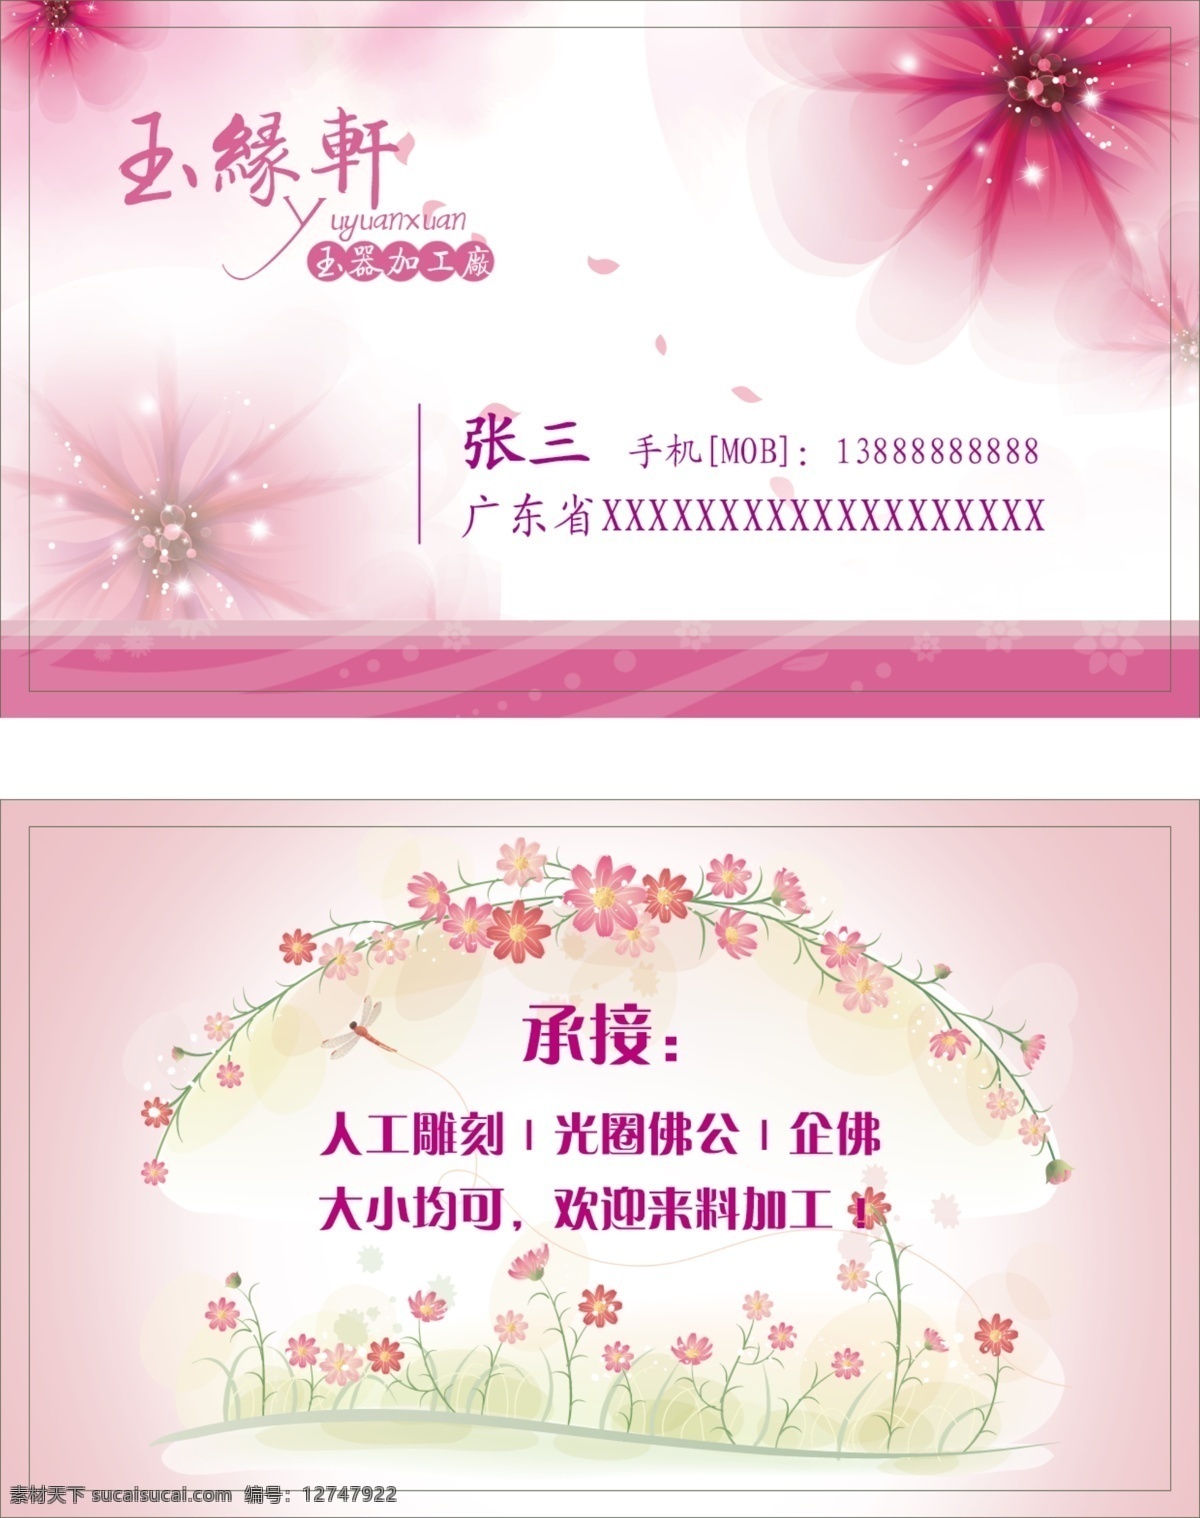 个性名片模板 创意名片 会员卡 优惠券 pvc卡 名片设计 广告设计模板 源文件 名片模板 粉红 粉色 女生 玉器 玉器加工